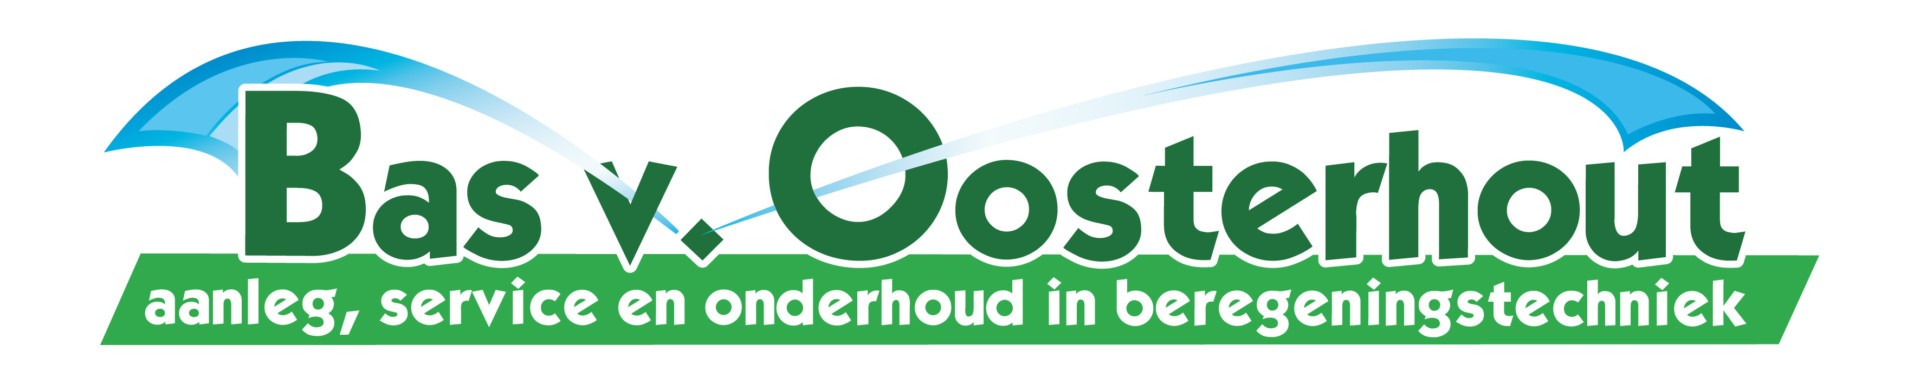 Bas van Oosterhout logo (2)